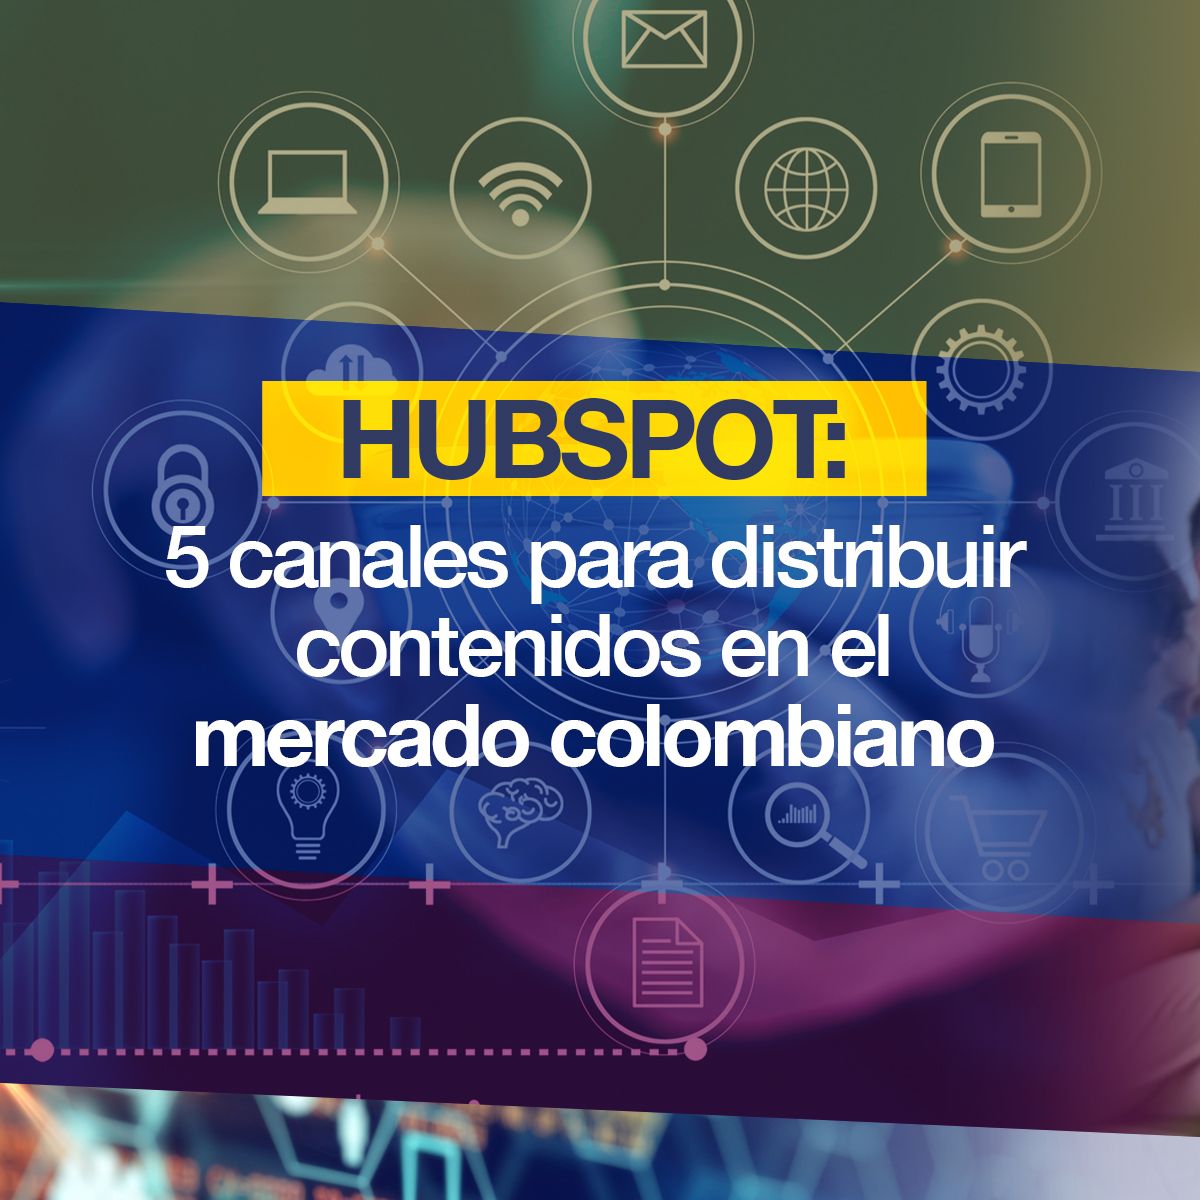 Hubspot: 5 canales para distribuir contenidos en el mercado colombiano